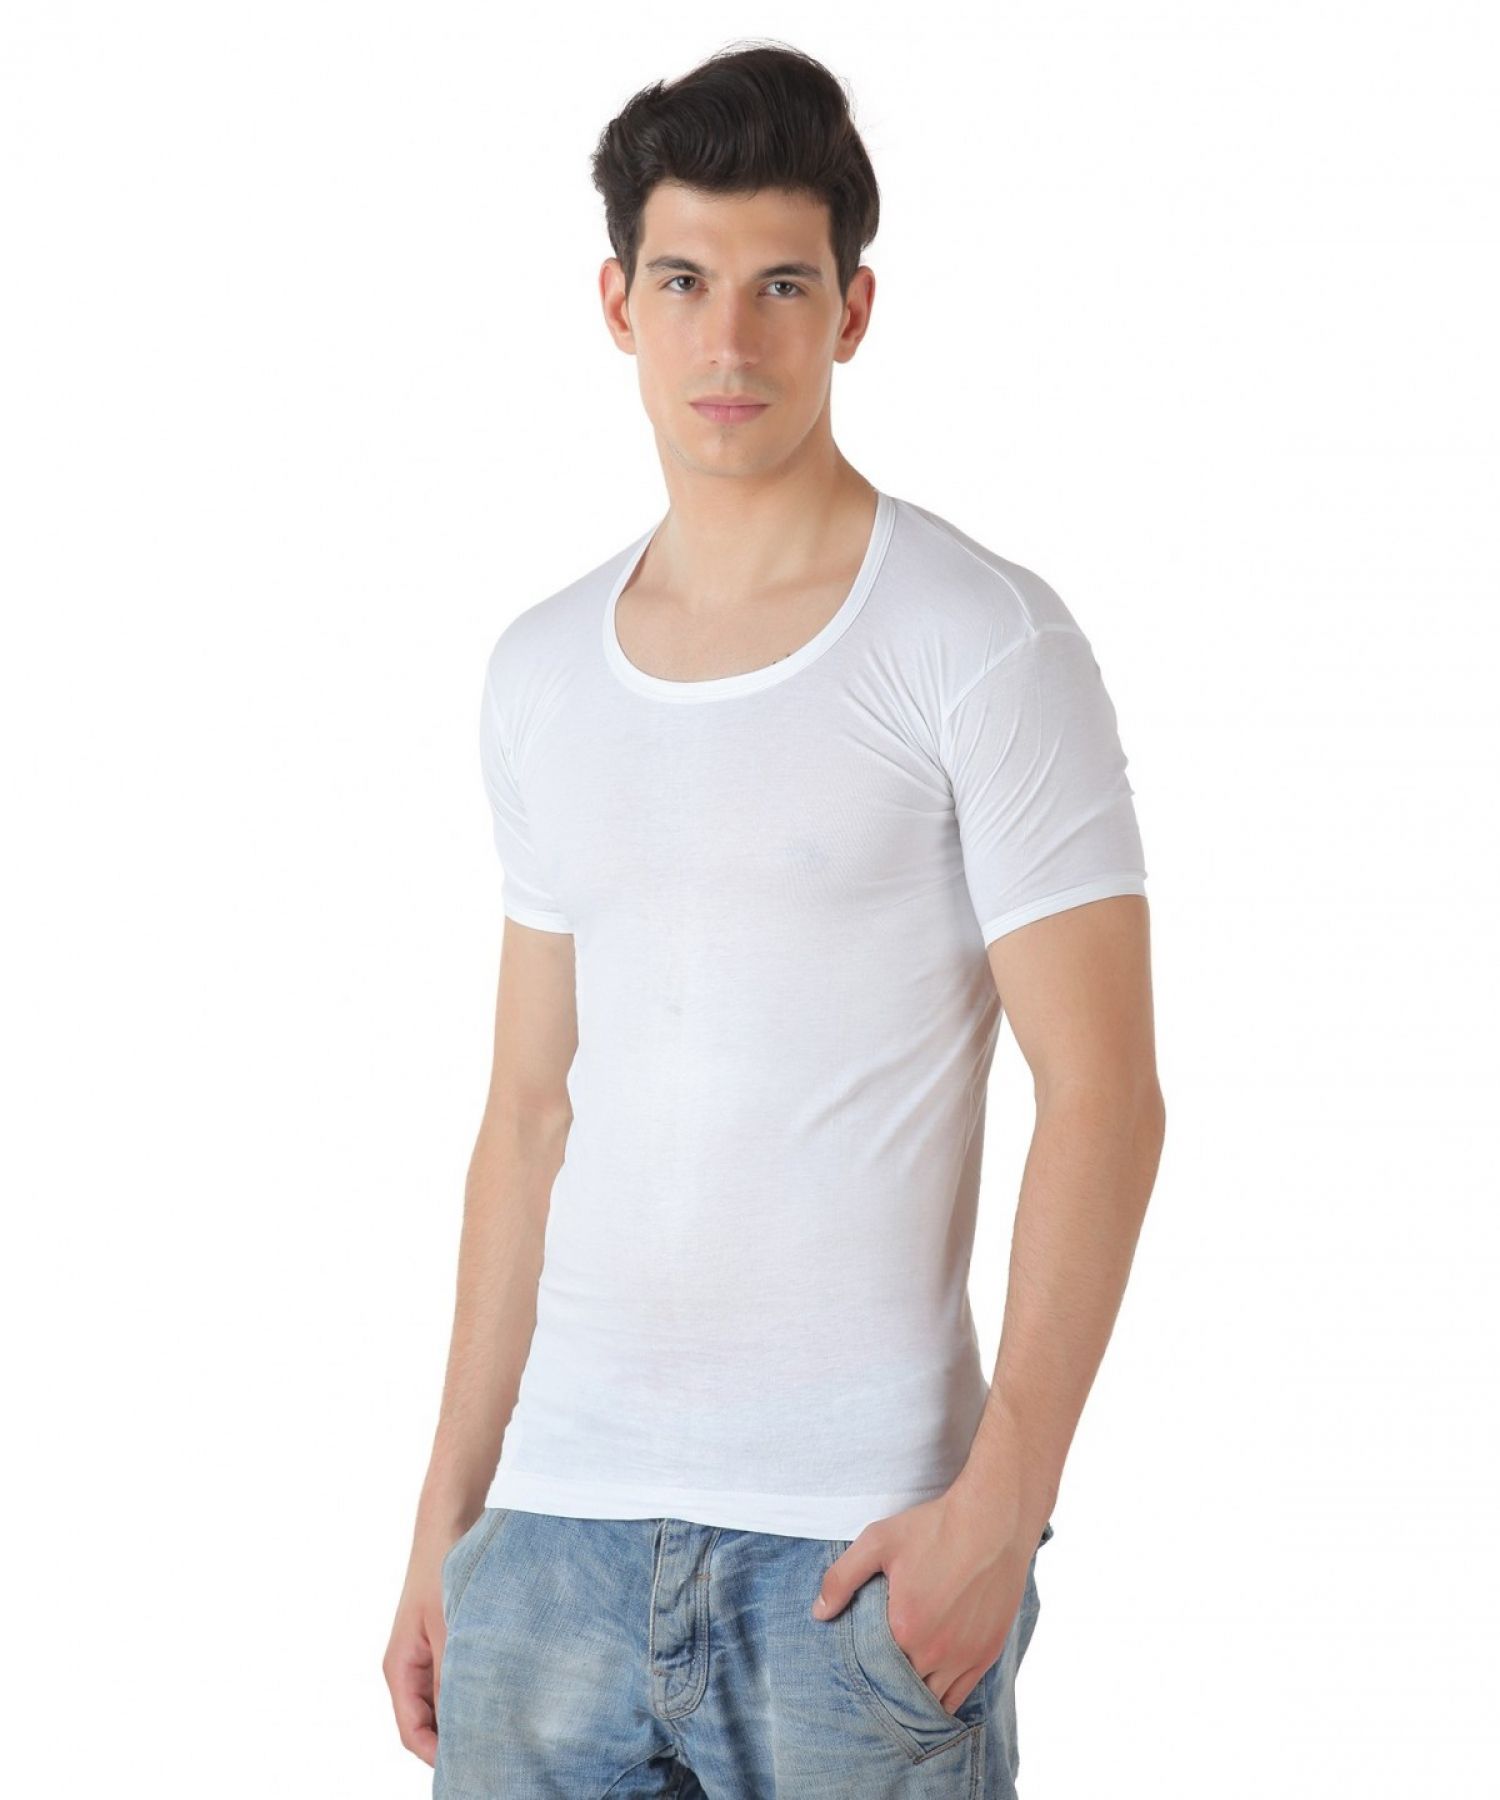 TT White Half Sleeve Vests Pack of 5 - Buy TT White Half Sleeve Vests ...